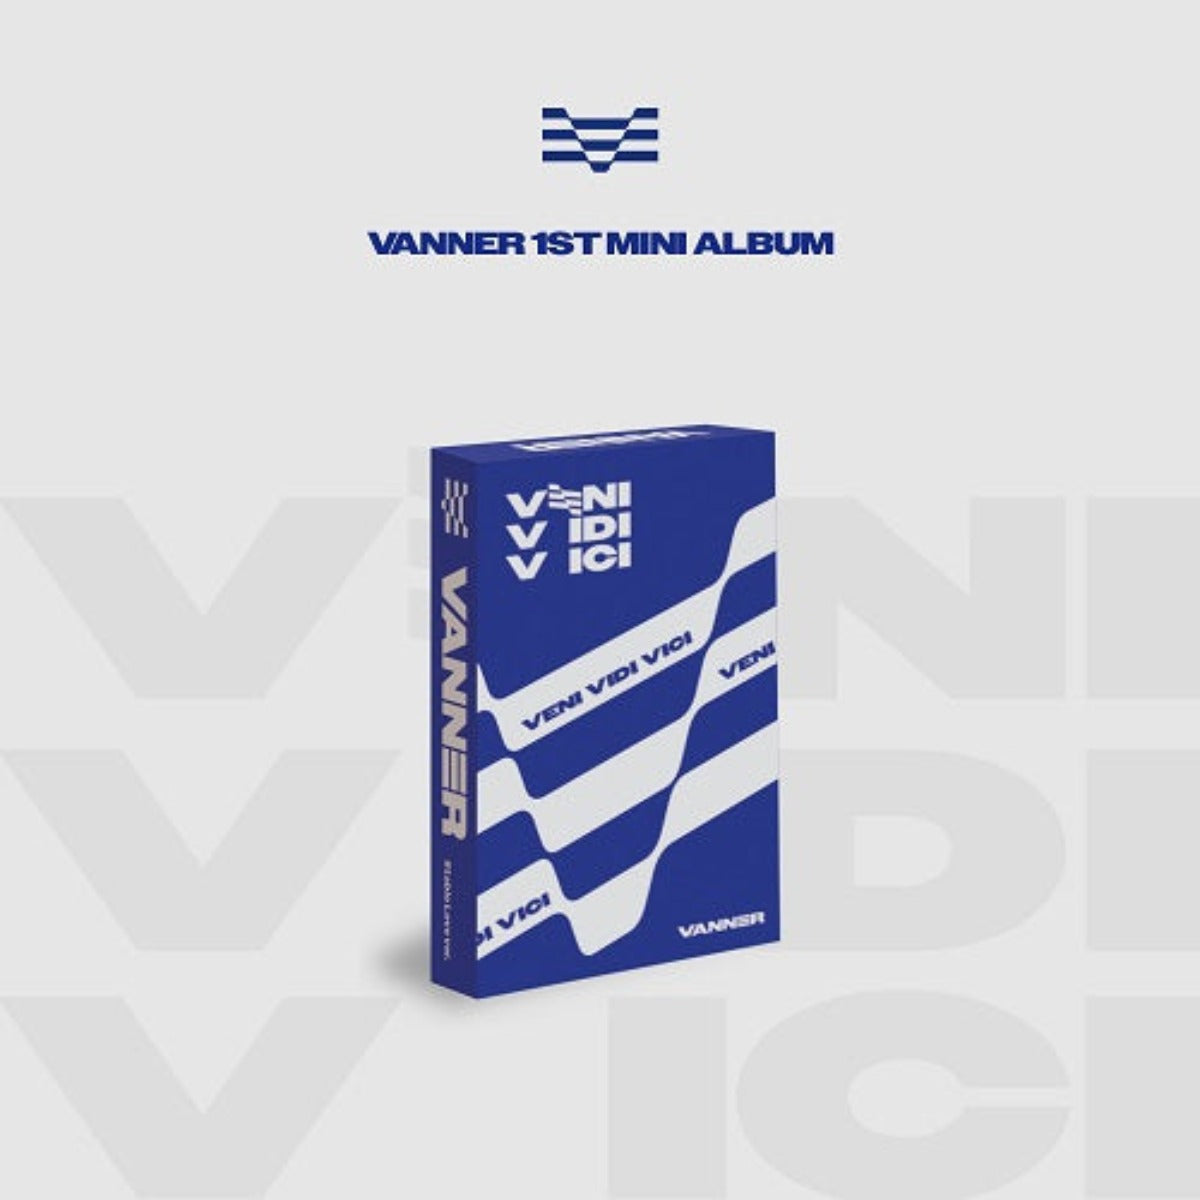 VANNER - VENI VIDI VICI (1st Mini Album)[PLVE Ver.]